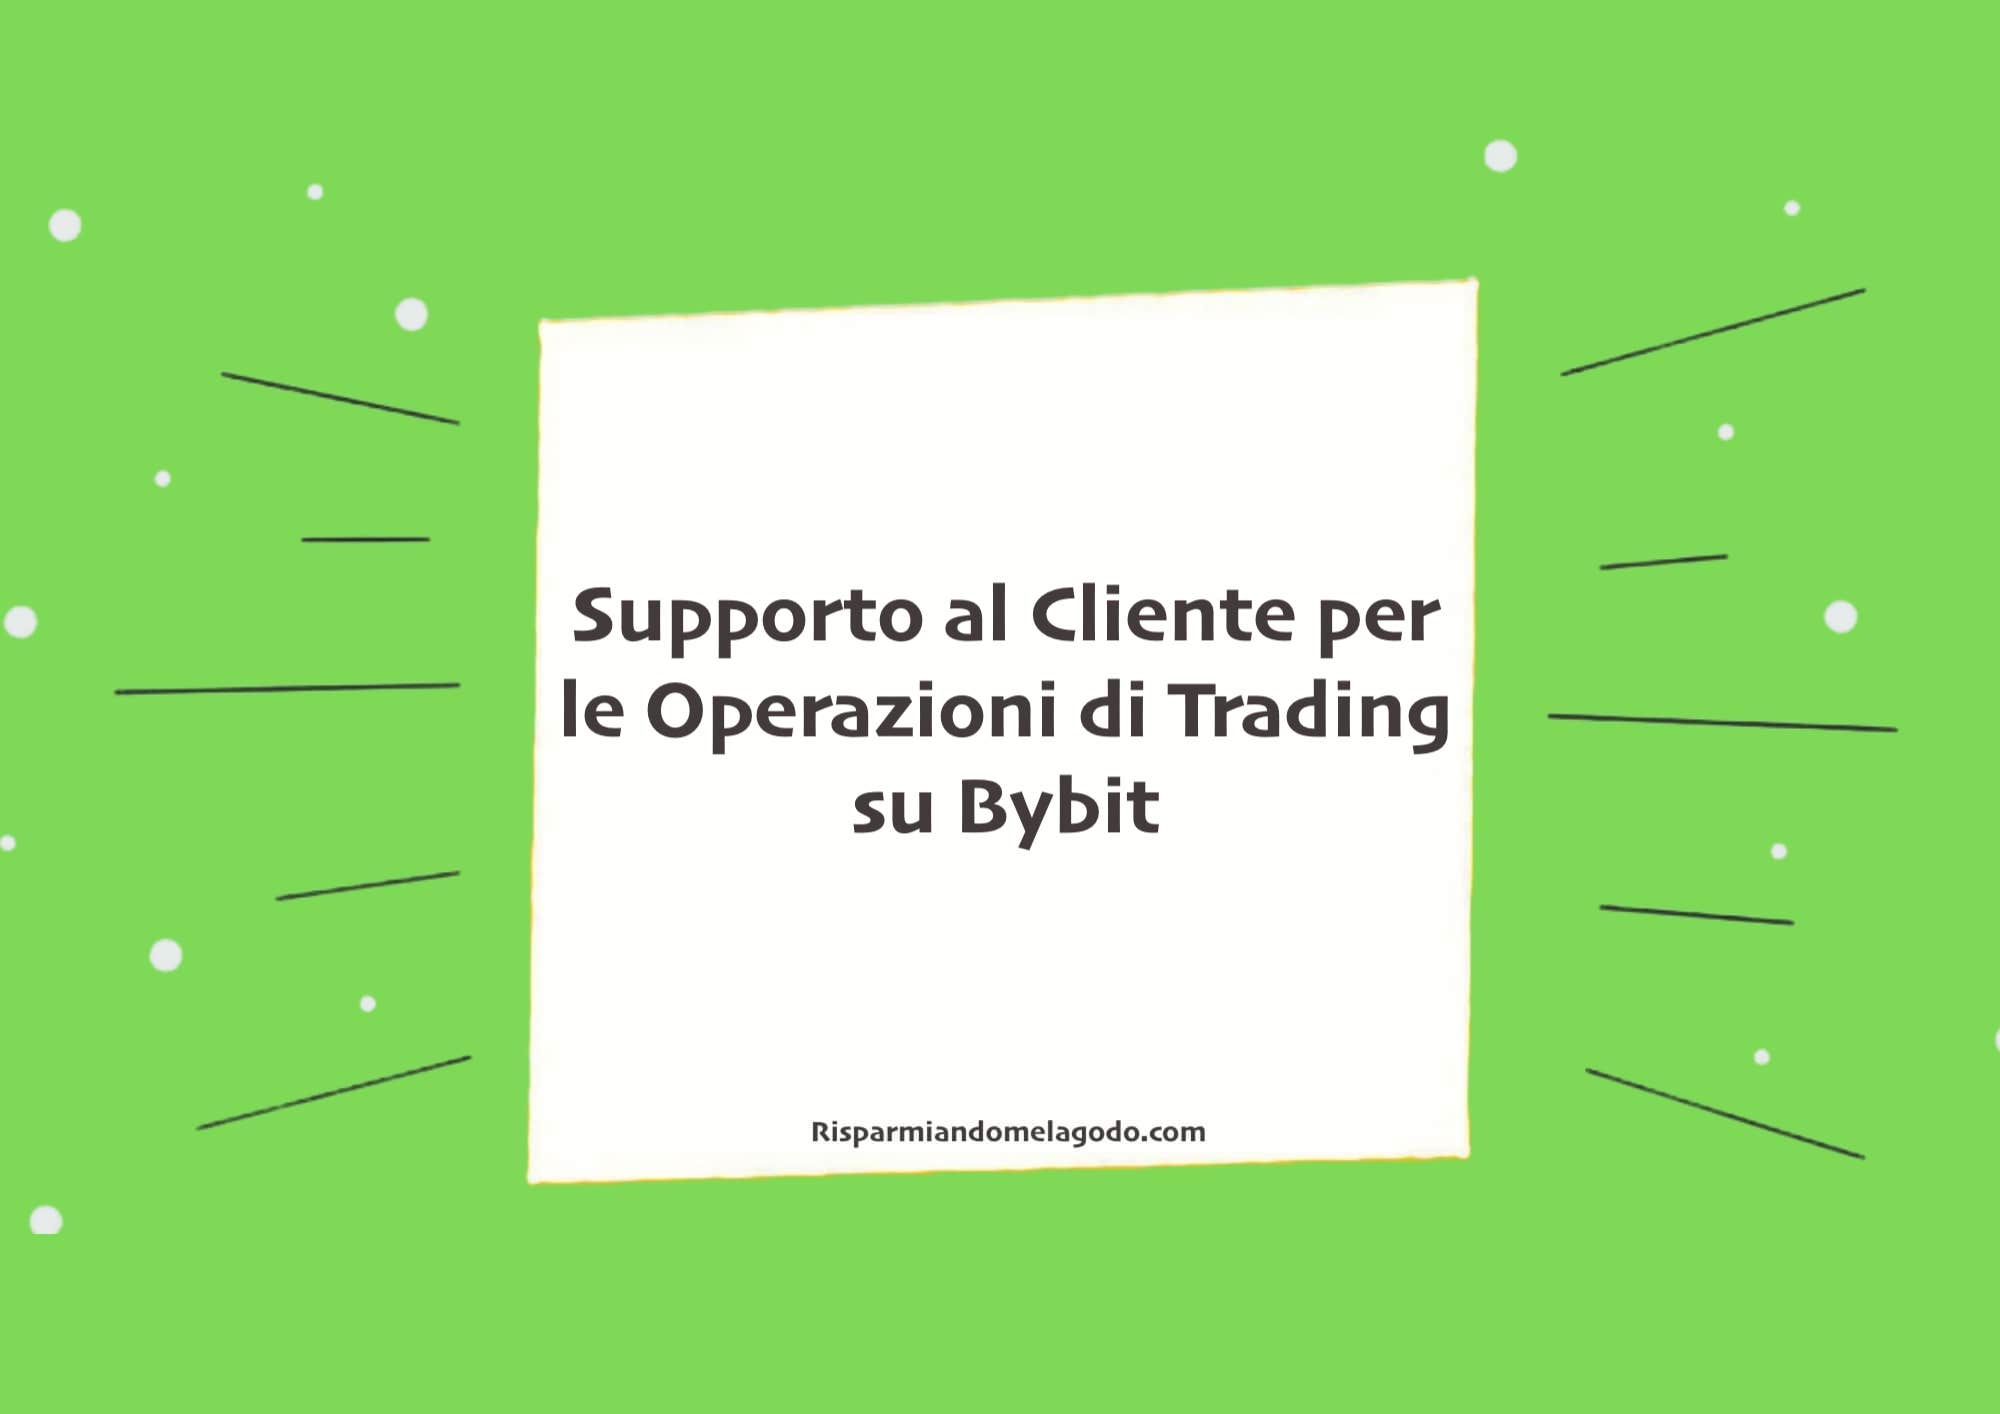 Supporto al Cliente per le Operazioni di Trading su Bybit